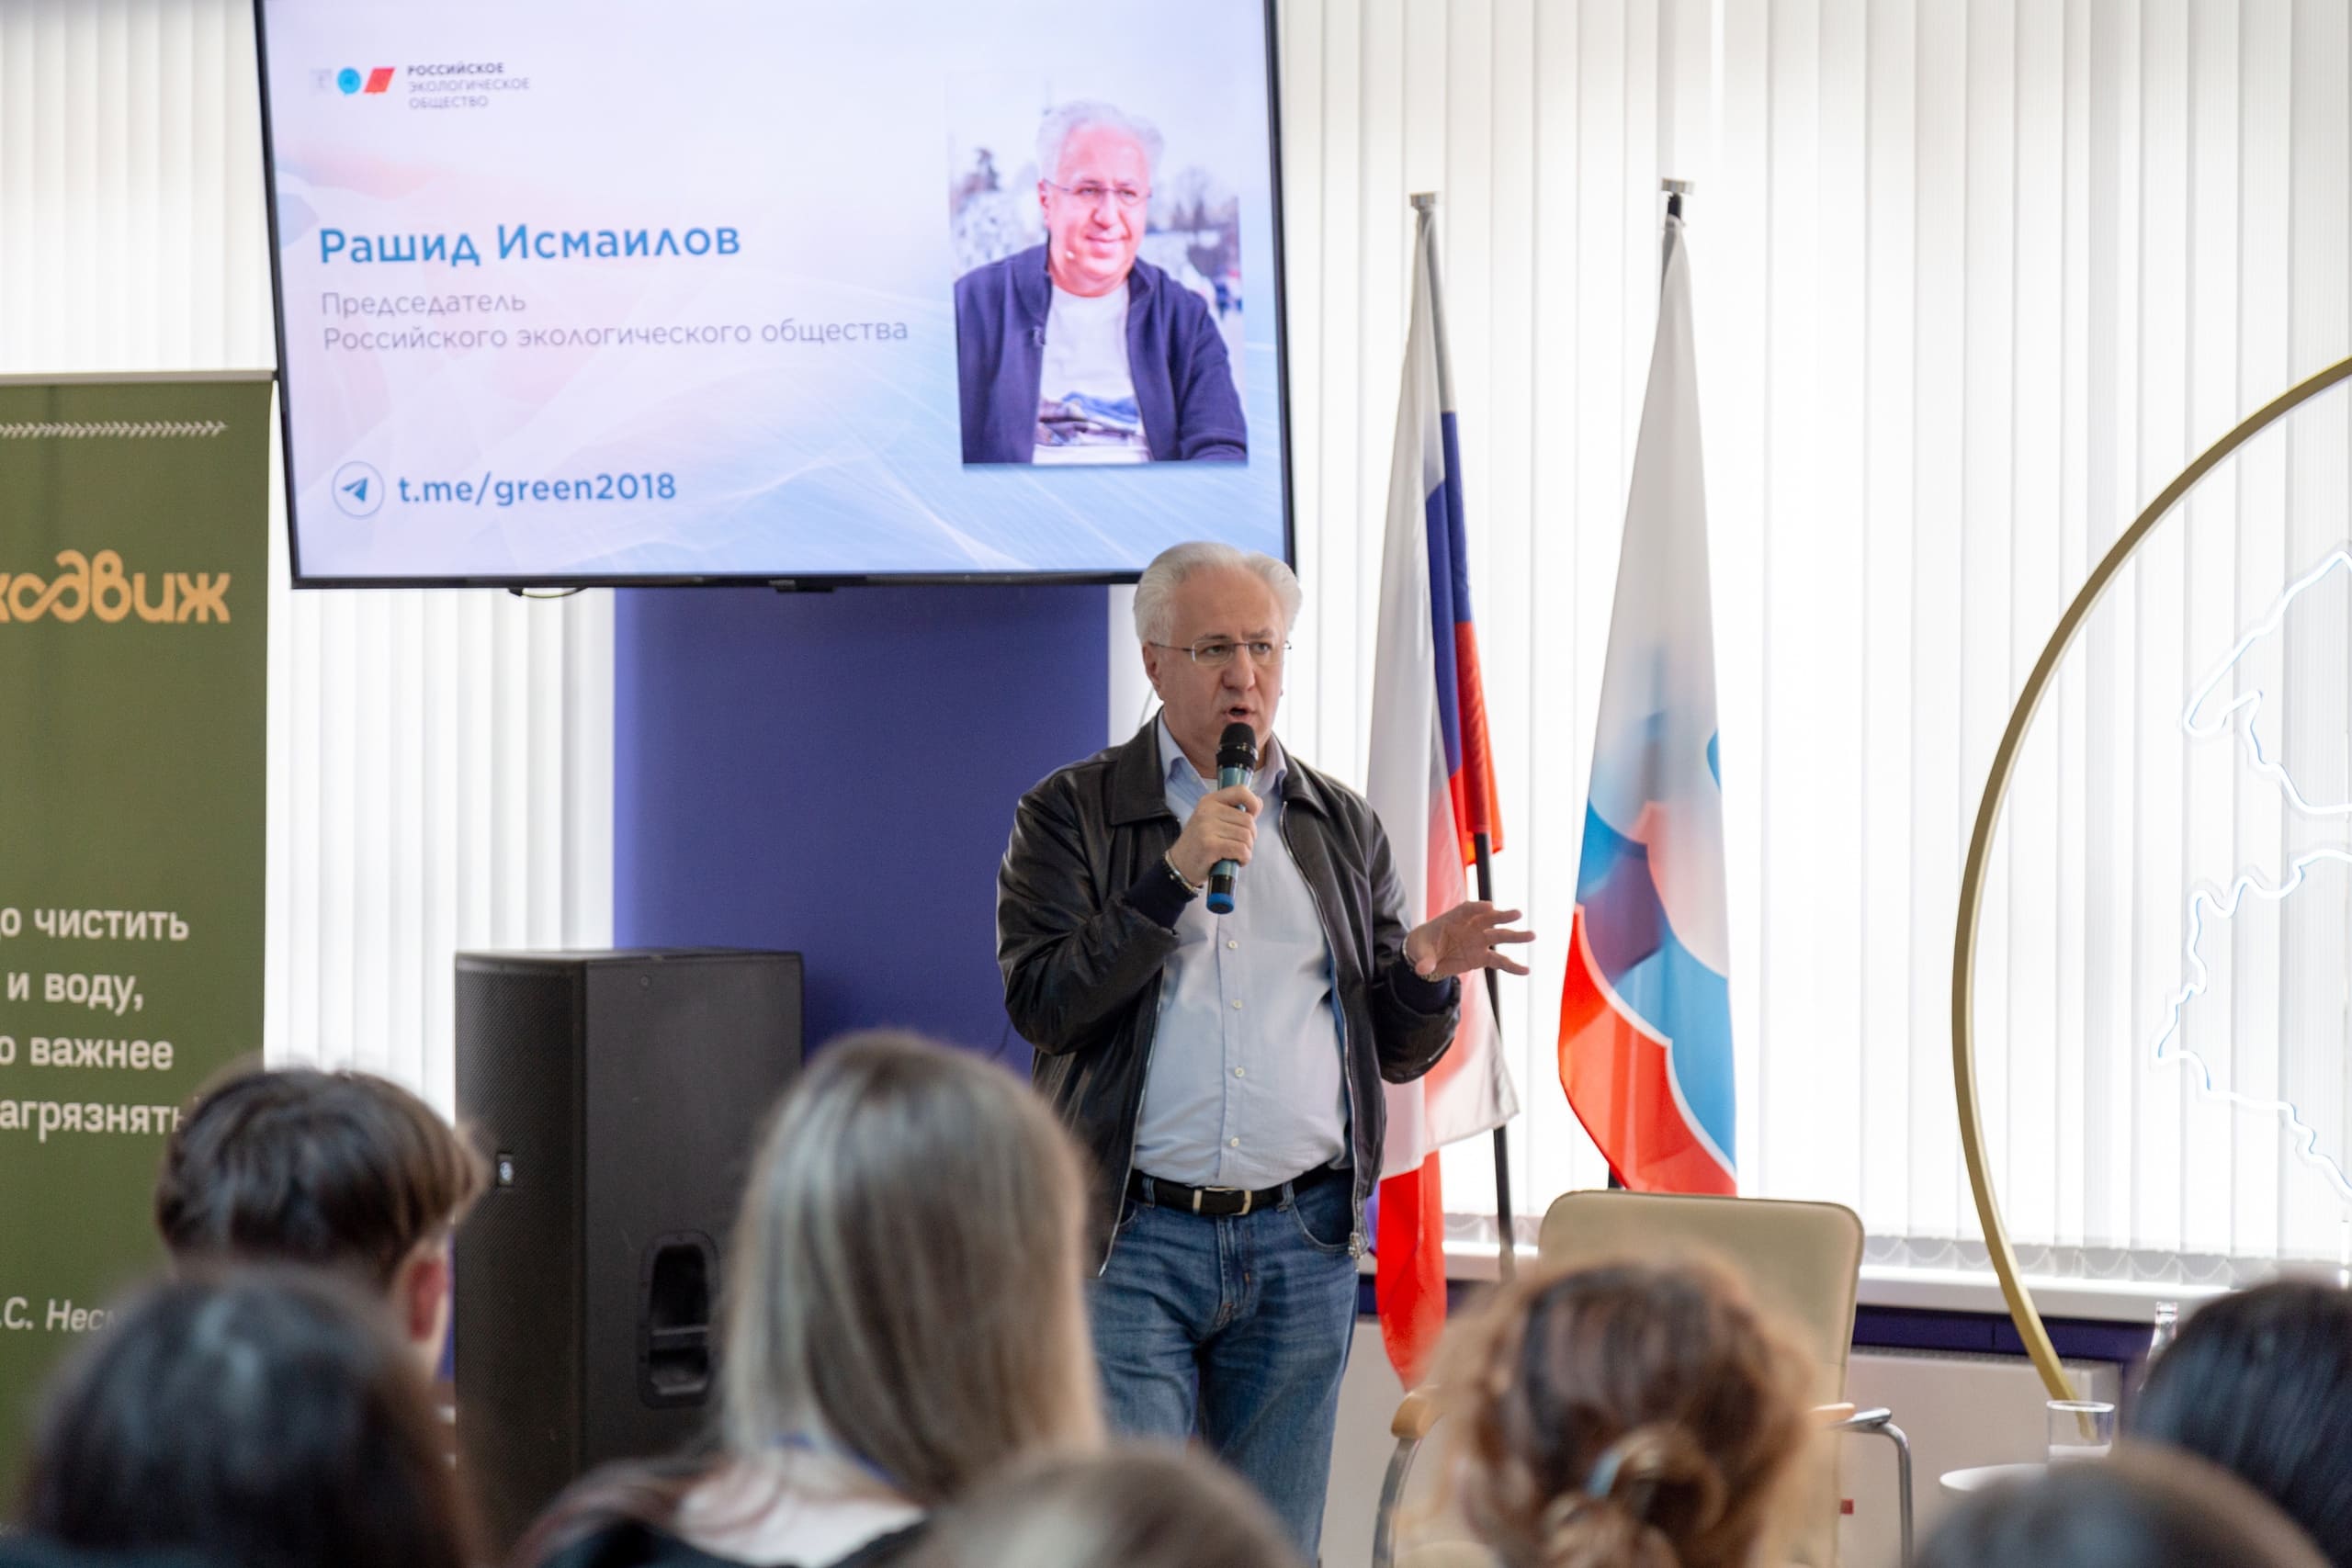 Рашид Исмаилов выступил на Молодежном экологическом форуме «Экодвиж»